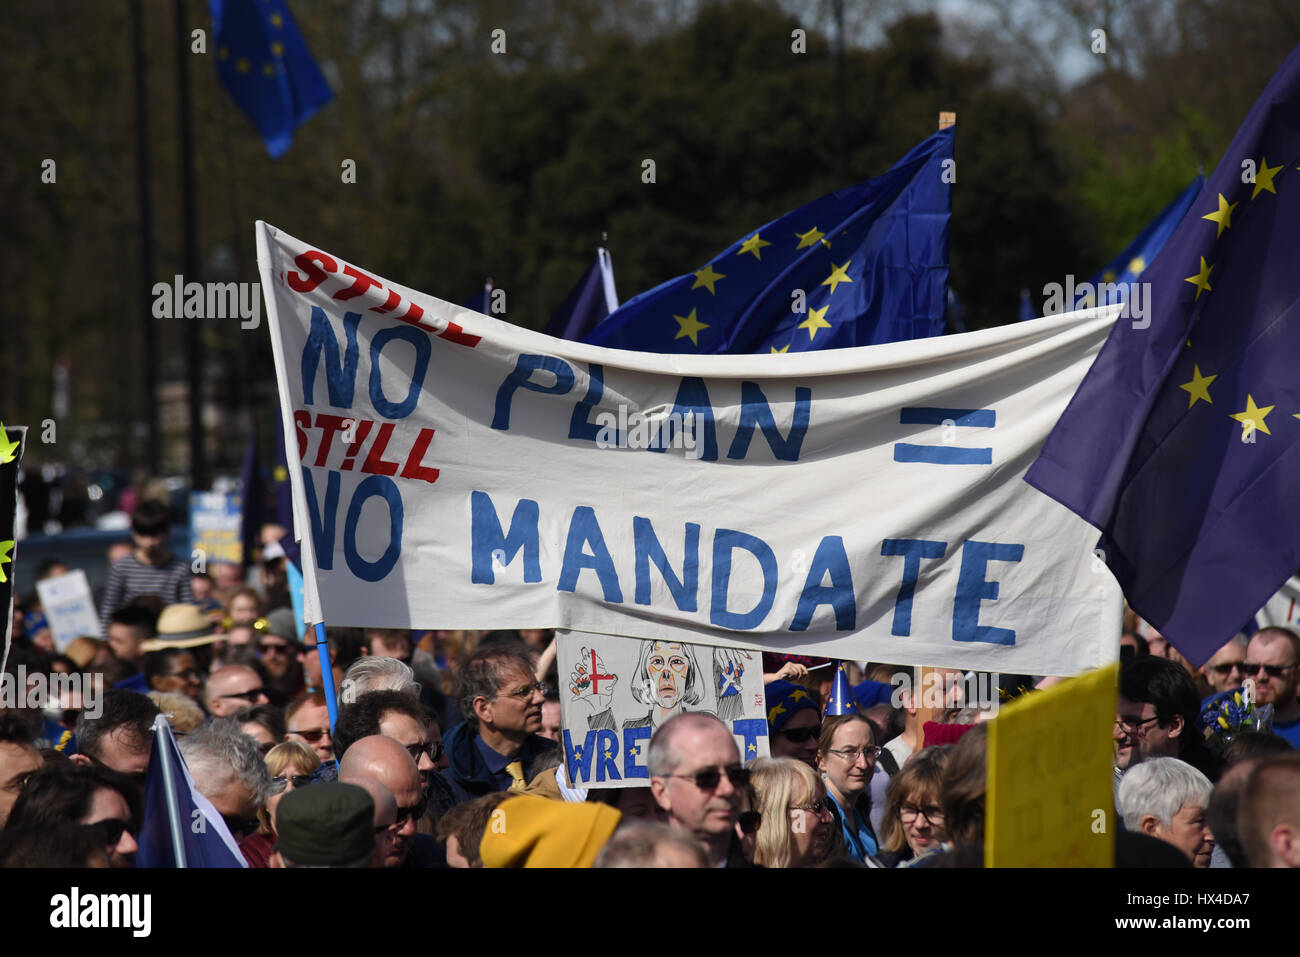 Nessun piano, nessun mandato. A Londra si è svolta una marcia per manifestare contro la Brexit e l'articolo 50 - il ritiro del Regno Unito dall'Unione europea Foto Stock